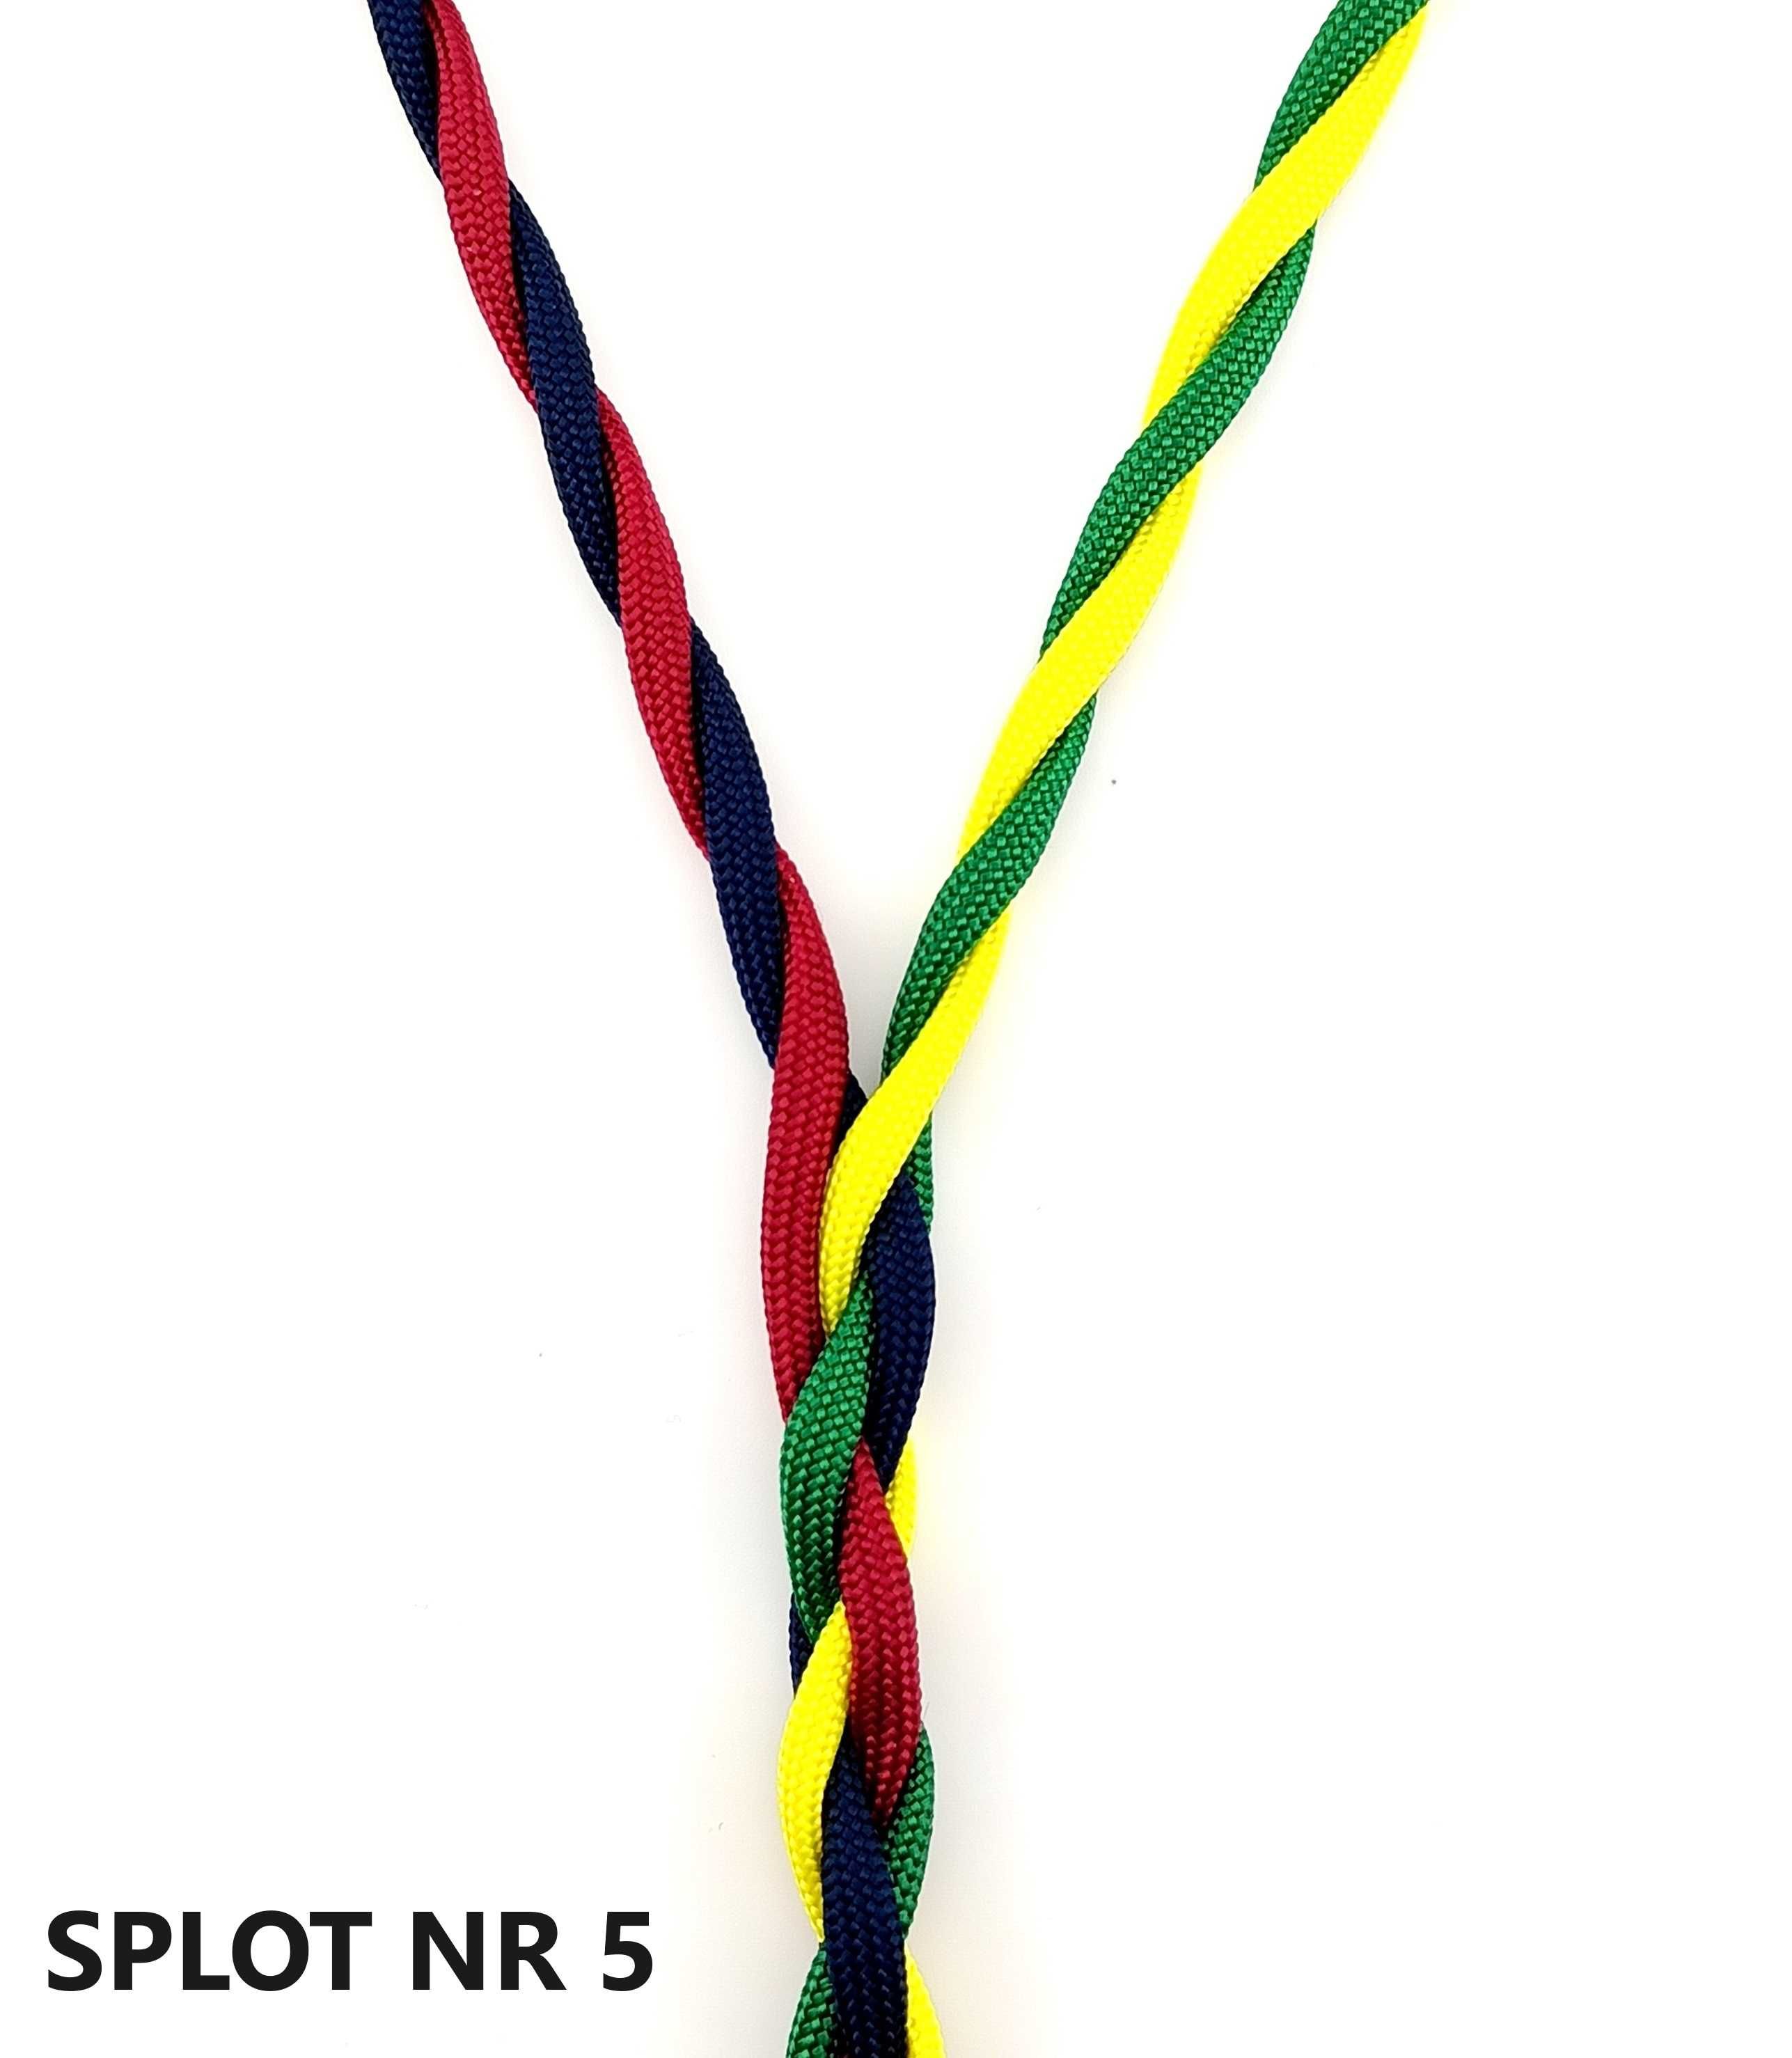 Ręcznie wykonany zbalansowany kabel do słuchawek FOSTEX, 2,5mm kolory